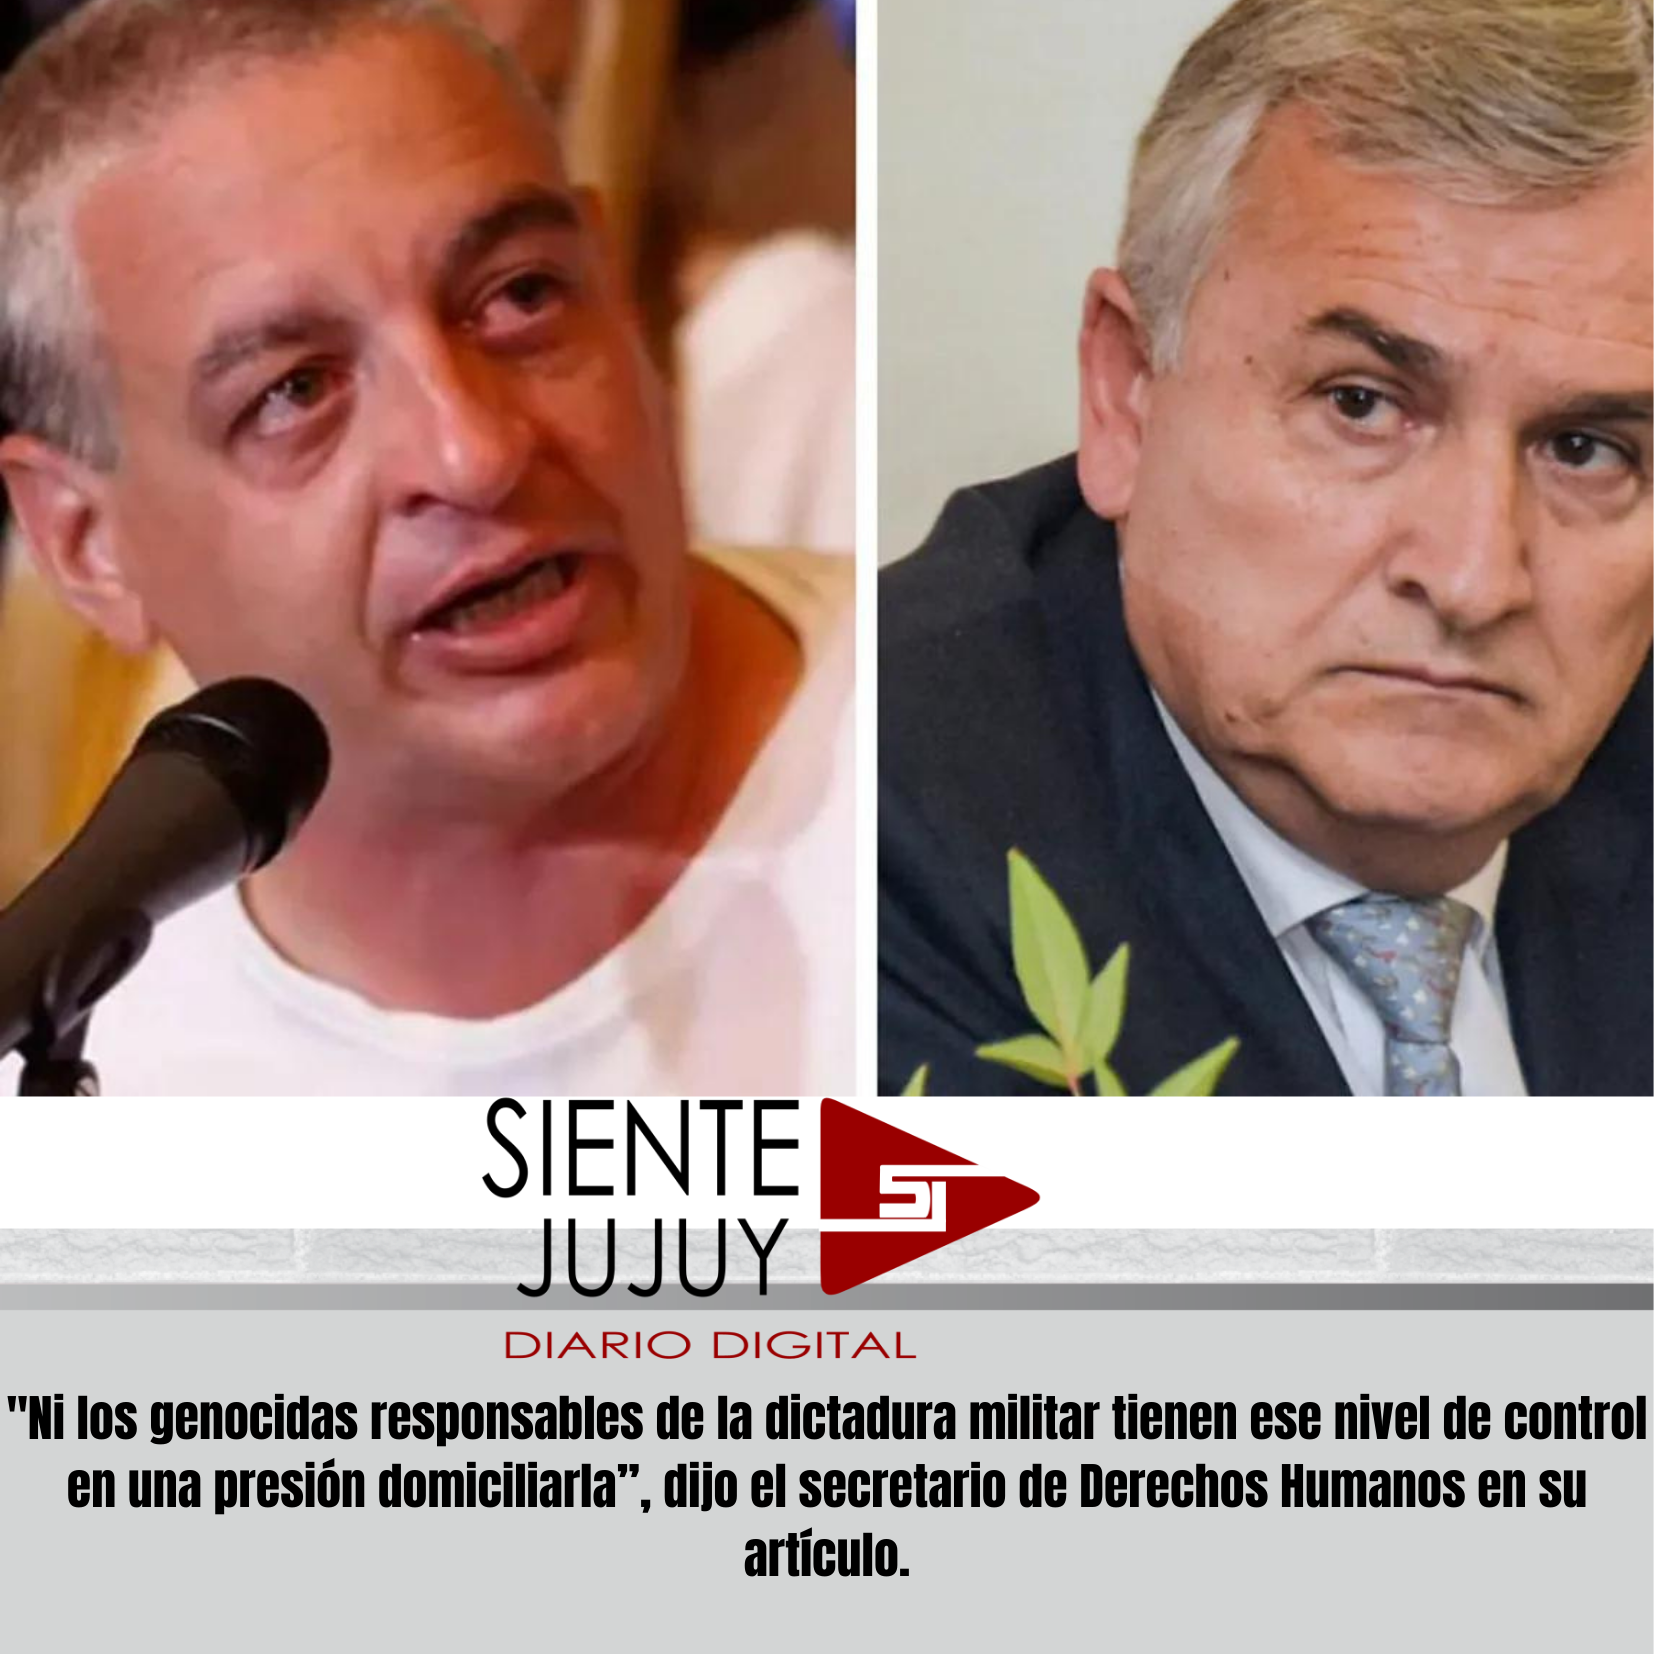 Tras la visita a Milagro Sala, el secretario de Derechos Humanos comparó al gobierno de Jujuy con la dictadura